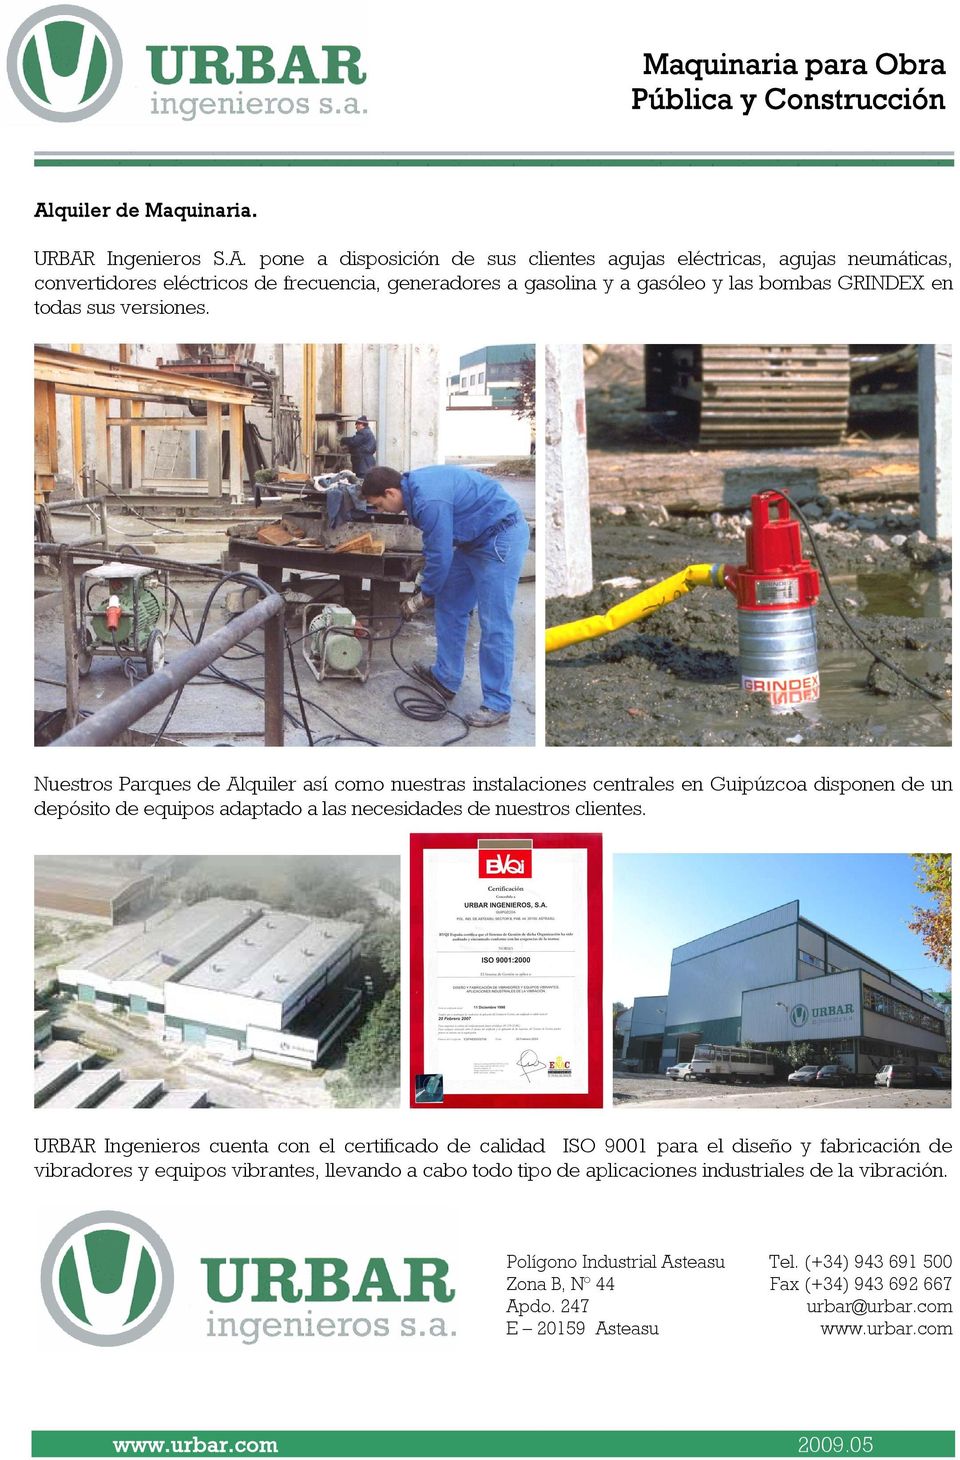 Nuestros Parques de Alquiler así como nuestras instalaciones centrales en Guipúzcoa disponen de un depósito de equipos adaptado a las necesidades de nuestros clientes.